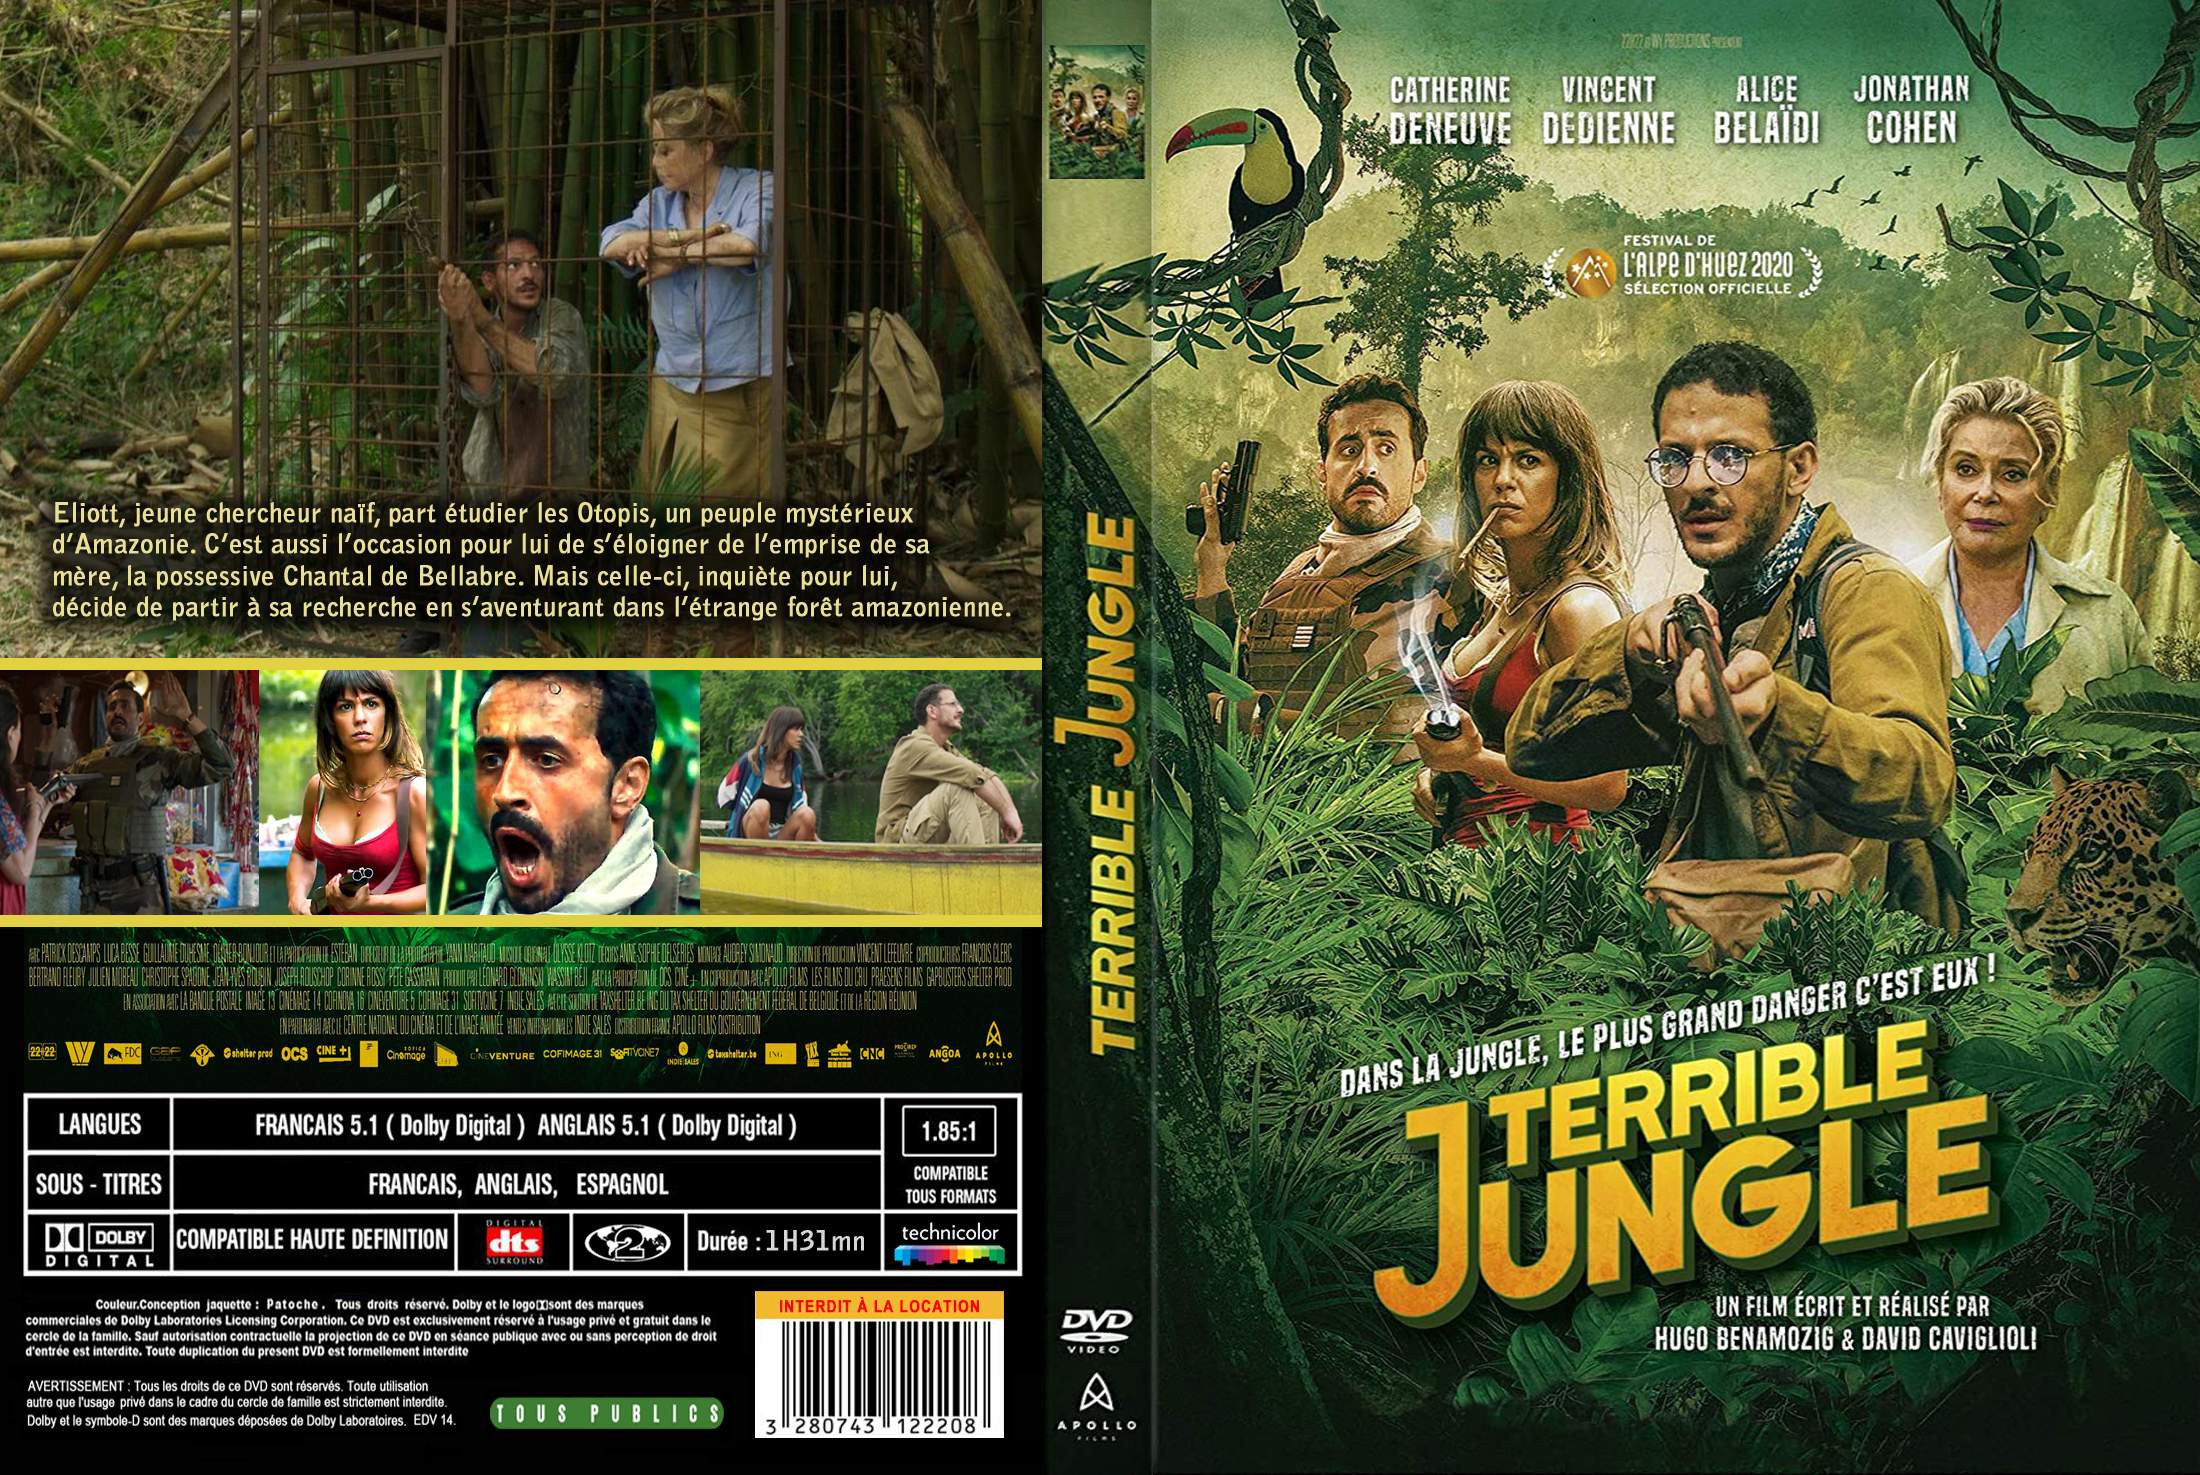 Concours : Gagnez un exemplaire du film Terrible Jungle en DVD - Daily  Movies